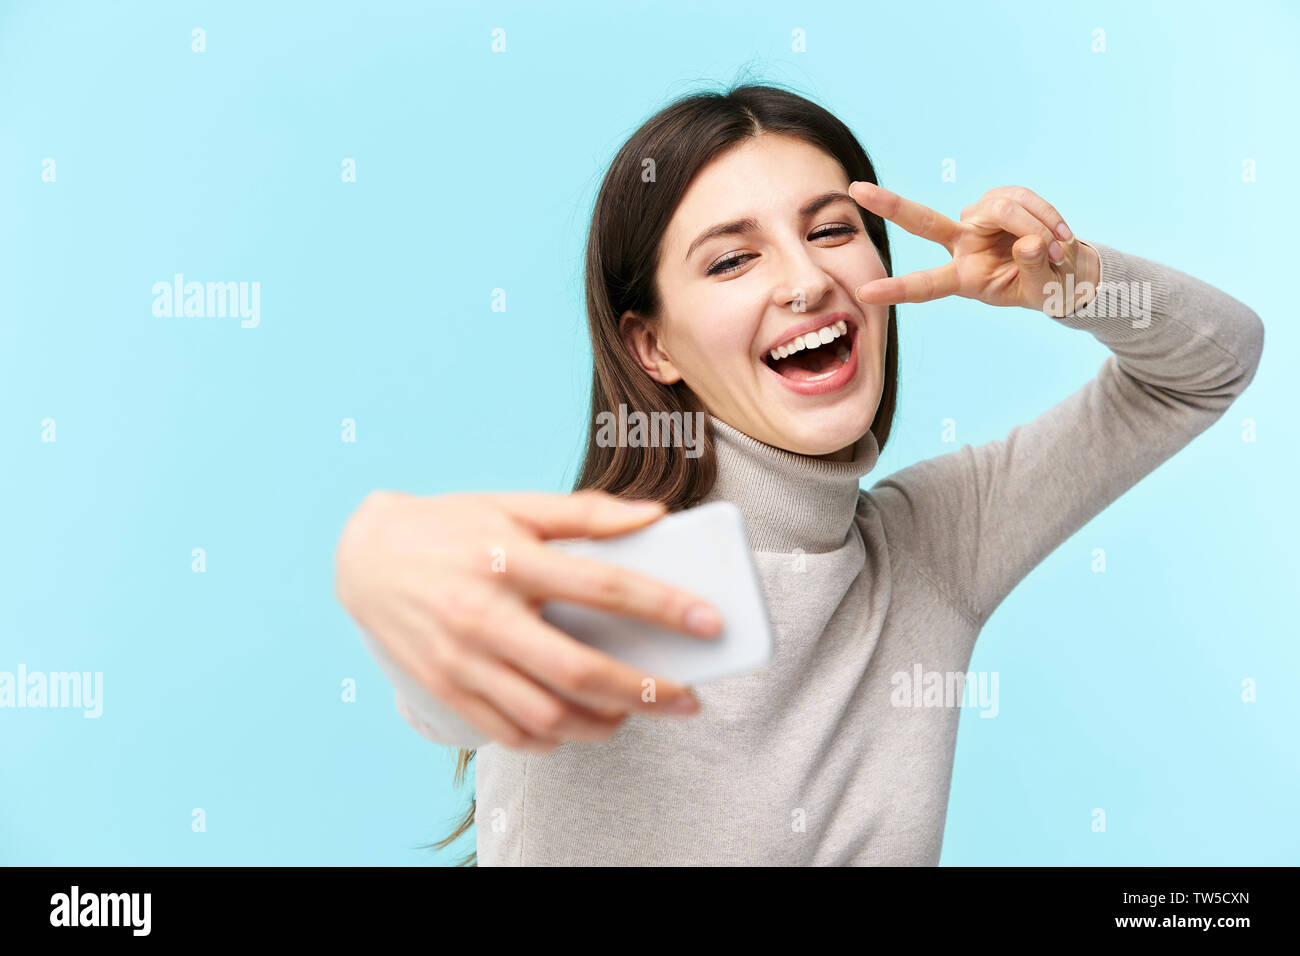 Bellissima giovane donna caucasica prendendo un selfie, felice e sorridente, isolato su sfondo blu Foto Stock